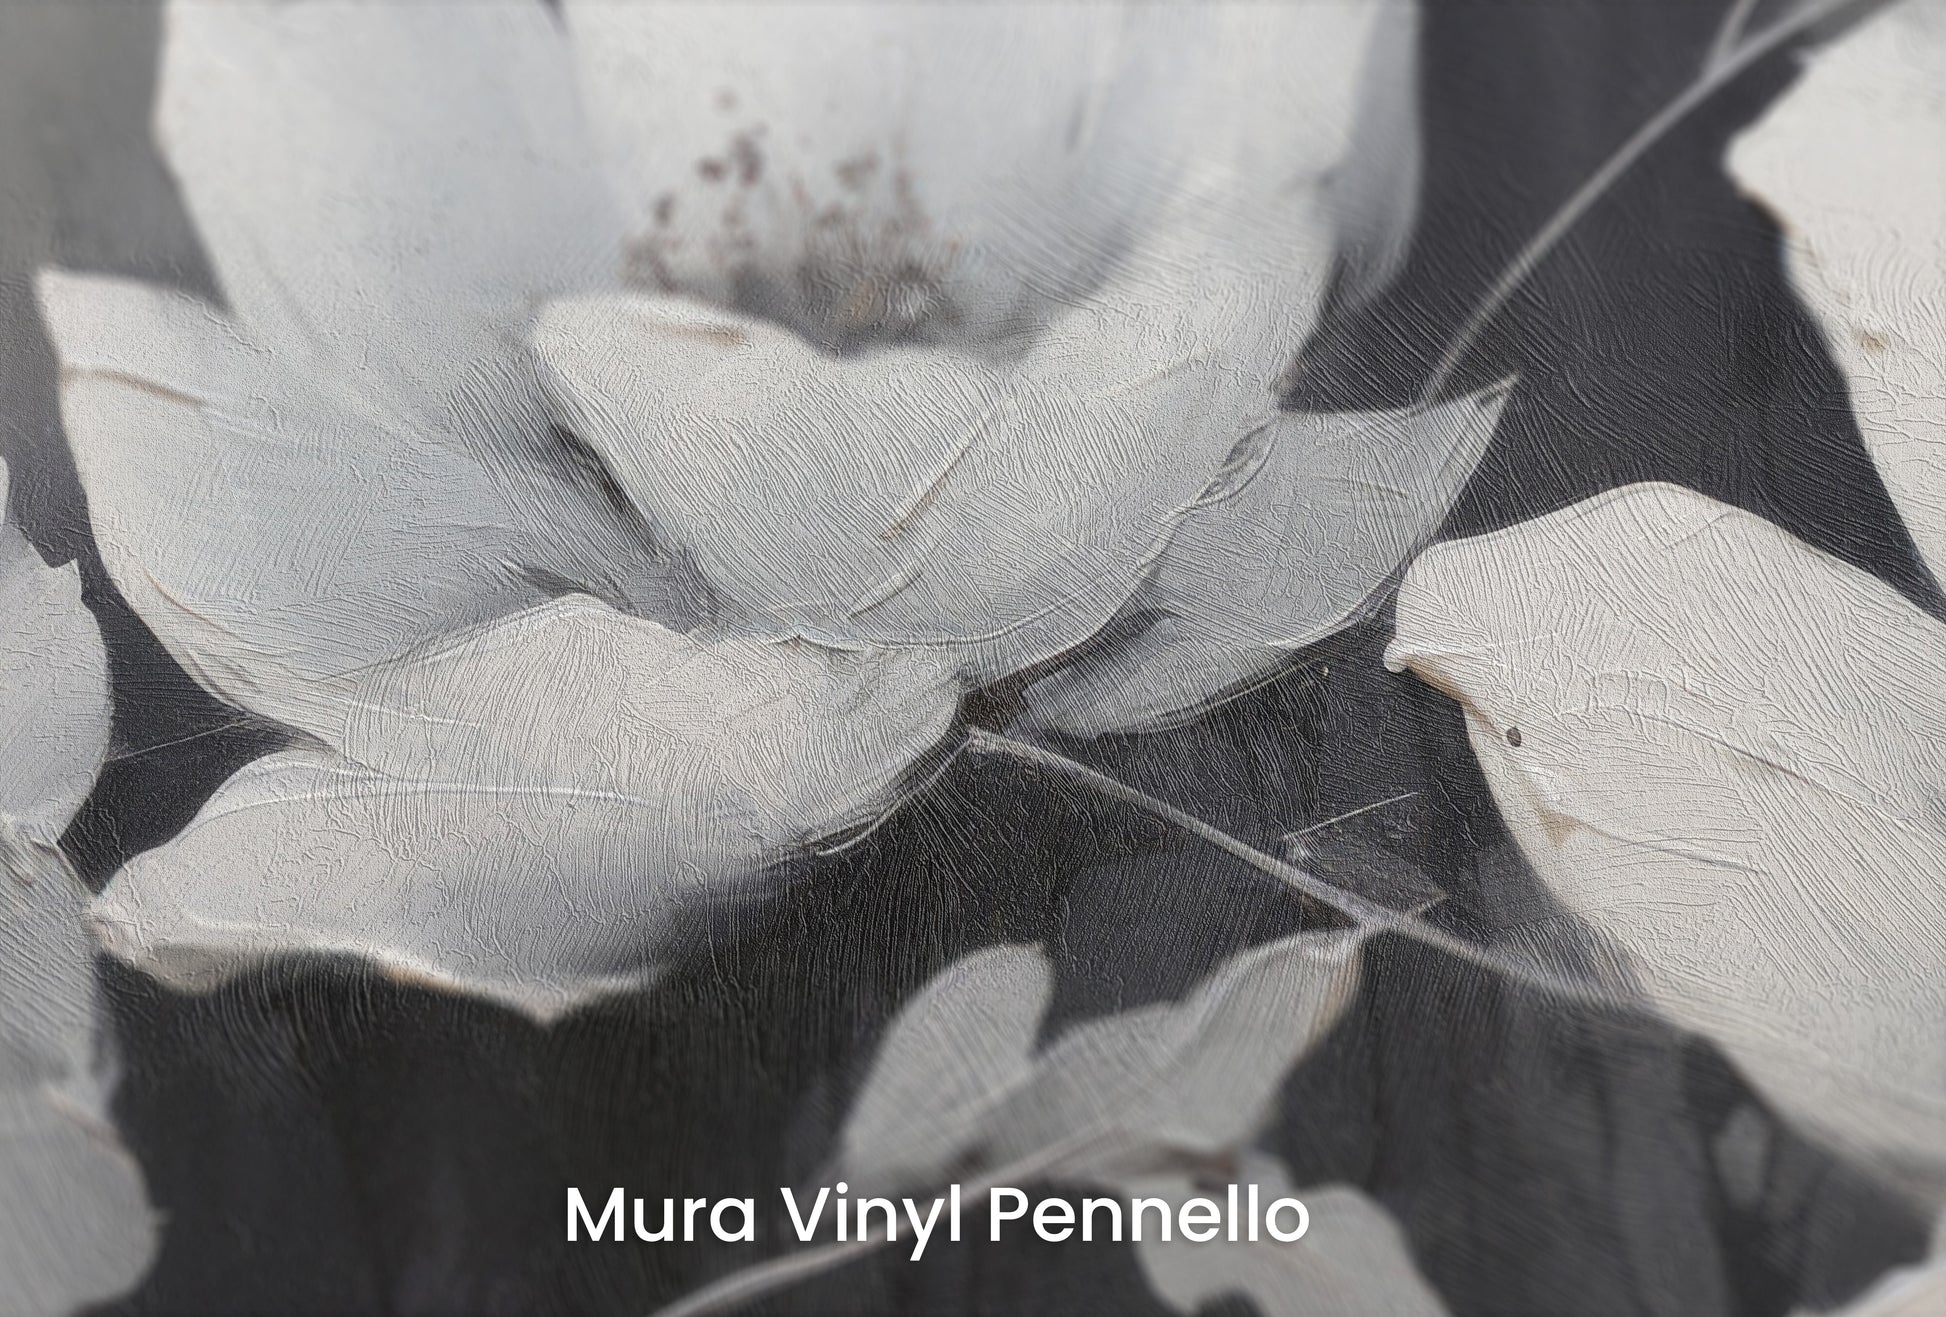 Zbliżenie na artystyczną fototapetę o nazwie MOONLIGHT SERENADE BLOSSOMS na podłożu Mura Vinyl Pennello - faktura pociągnięć pędzla malarskiego.